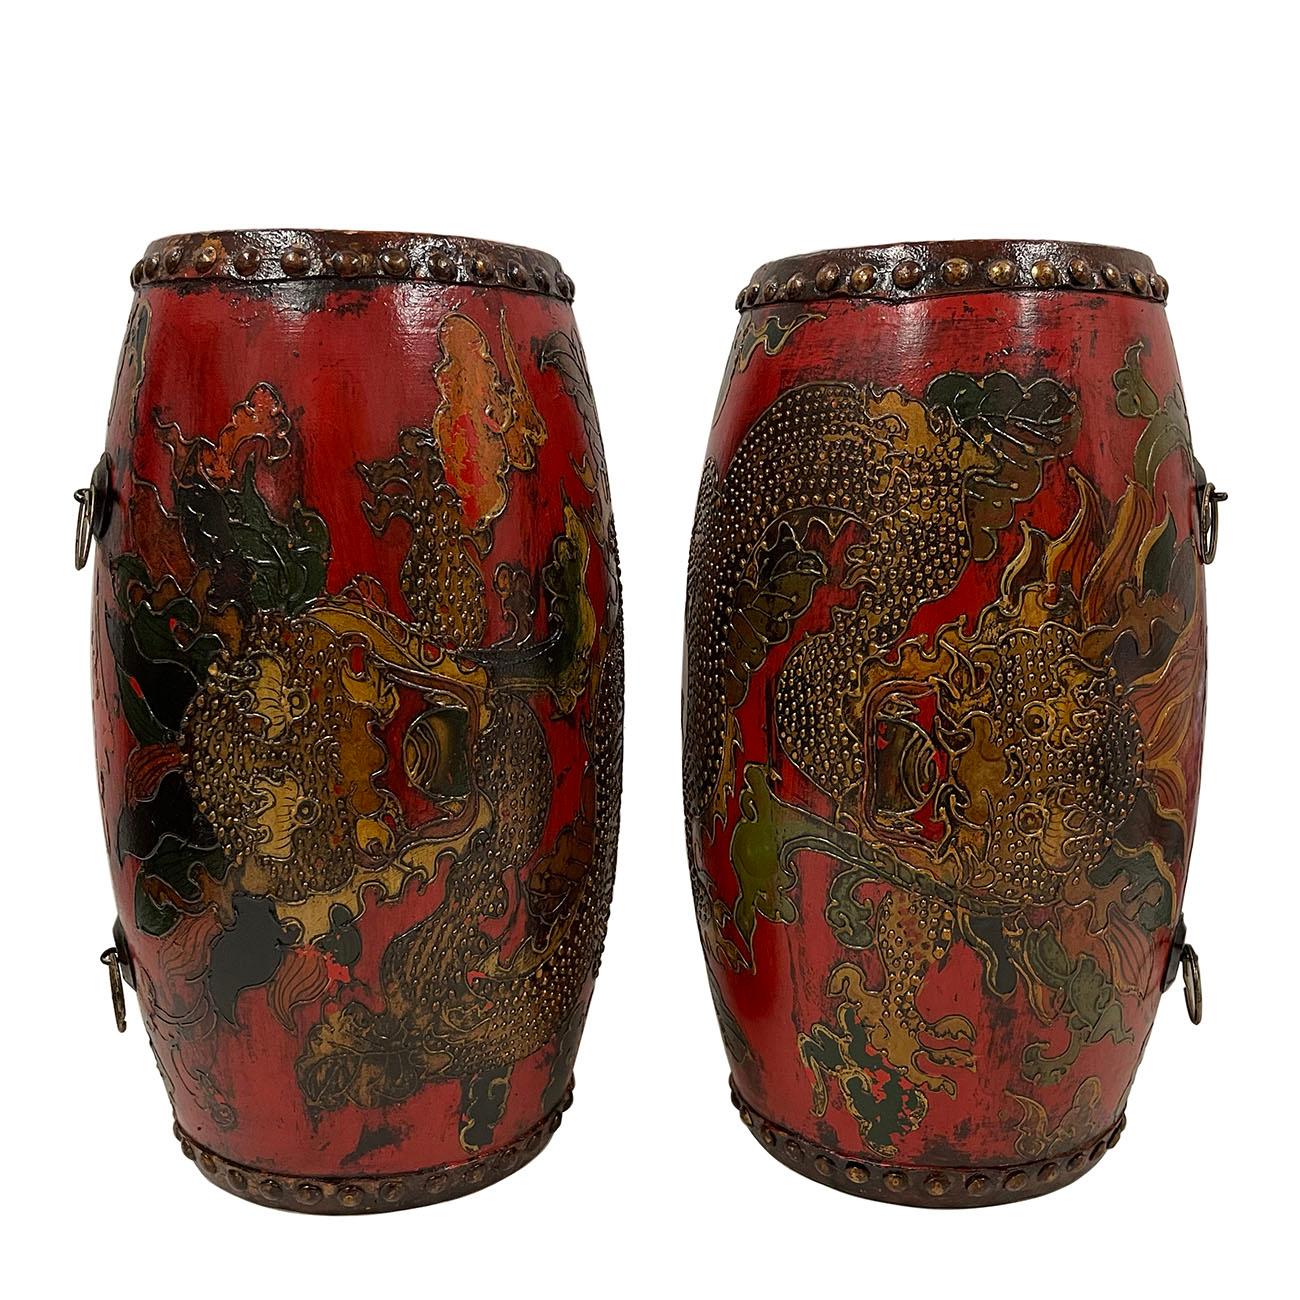 Cette magnifique paire de tambours tibétains anciens a été fabriquée il y a de nombreuses années, mais a conservé son état d'origine. Ils sont tous fabriqués à la main en bois et en cuir. Il y a de belles peintures à la main d'art populaire